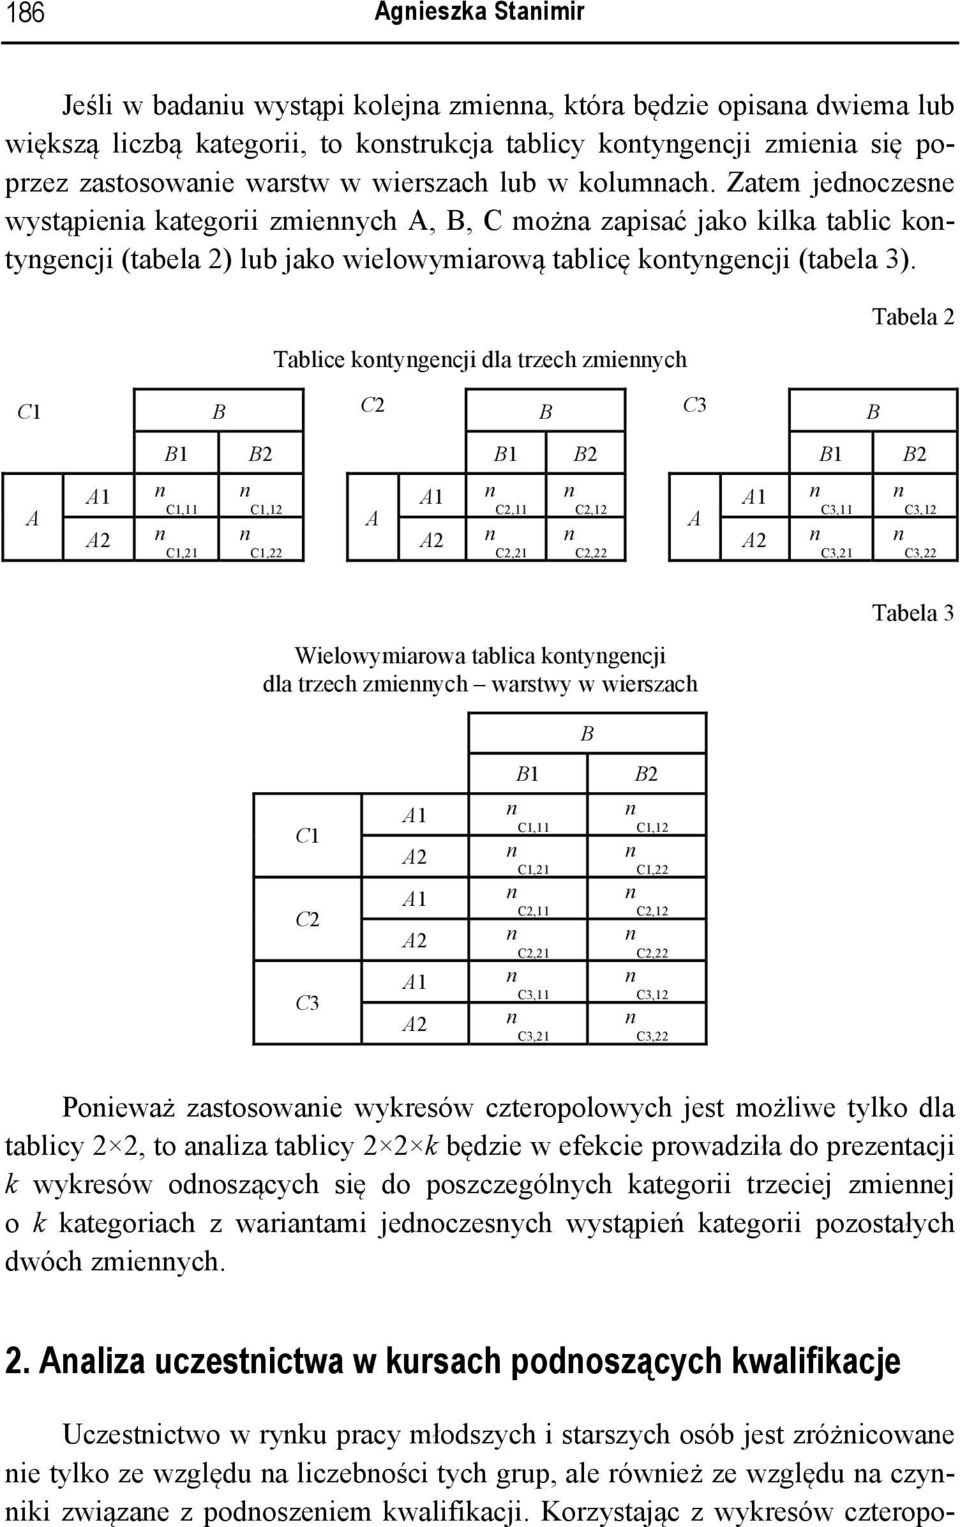 Tablice kotygecji dla trzech zmieych Tabela 2 C1 B C2 B C3 B A B1 B2 B1 B2 B1 B2 C1,11 C1,21 C1,12 C1,22 A C2,11 C2,21 C2,12 C2,22 A C3,11 C3,21 C3,12 C3,22 Wielowymiarowa tablica kotygecji dla